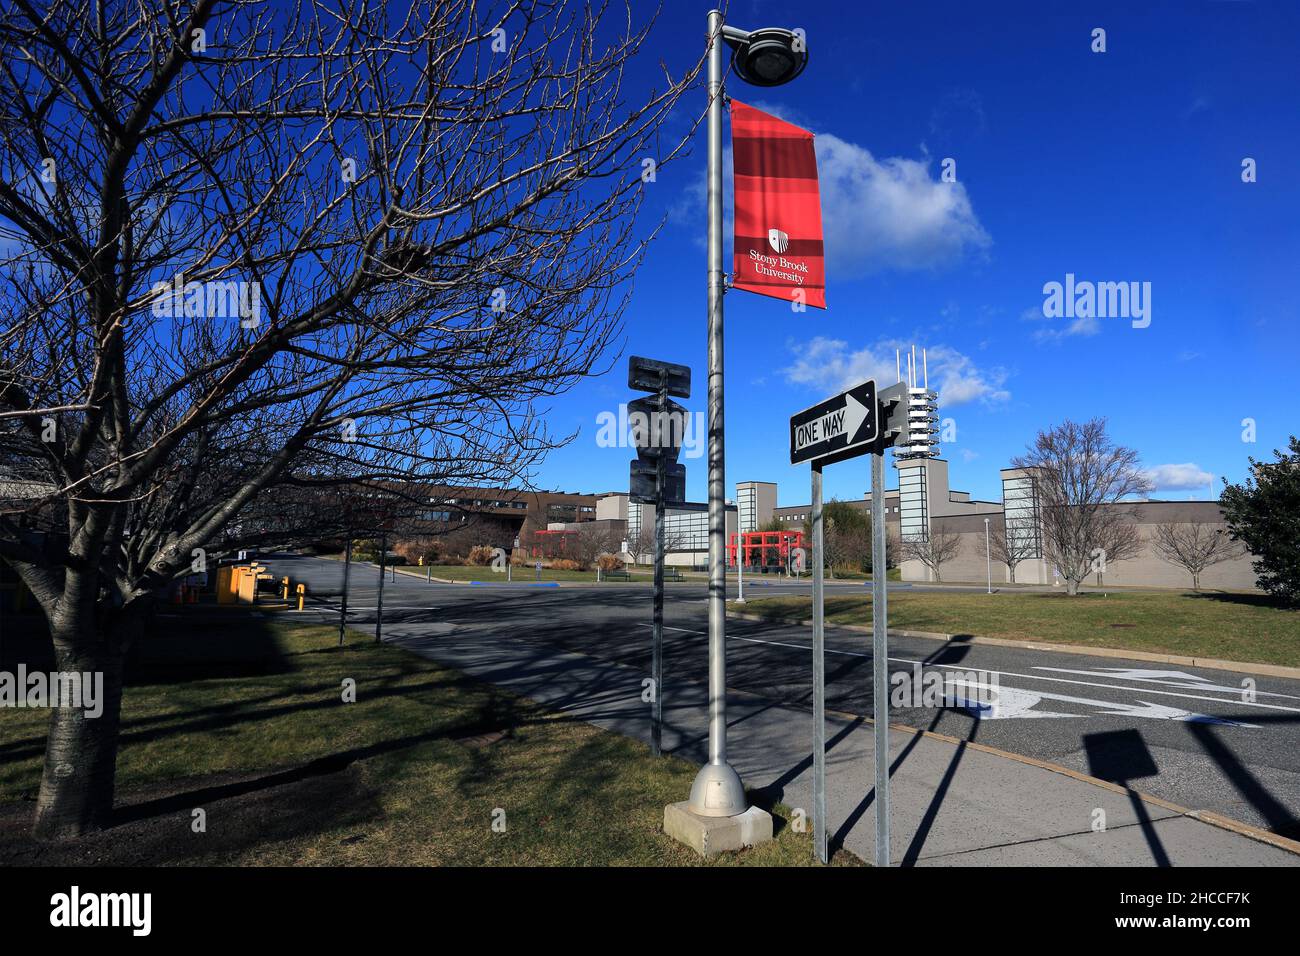 Stony Brook University Long Island New York Stockfoto